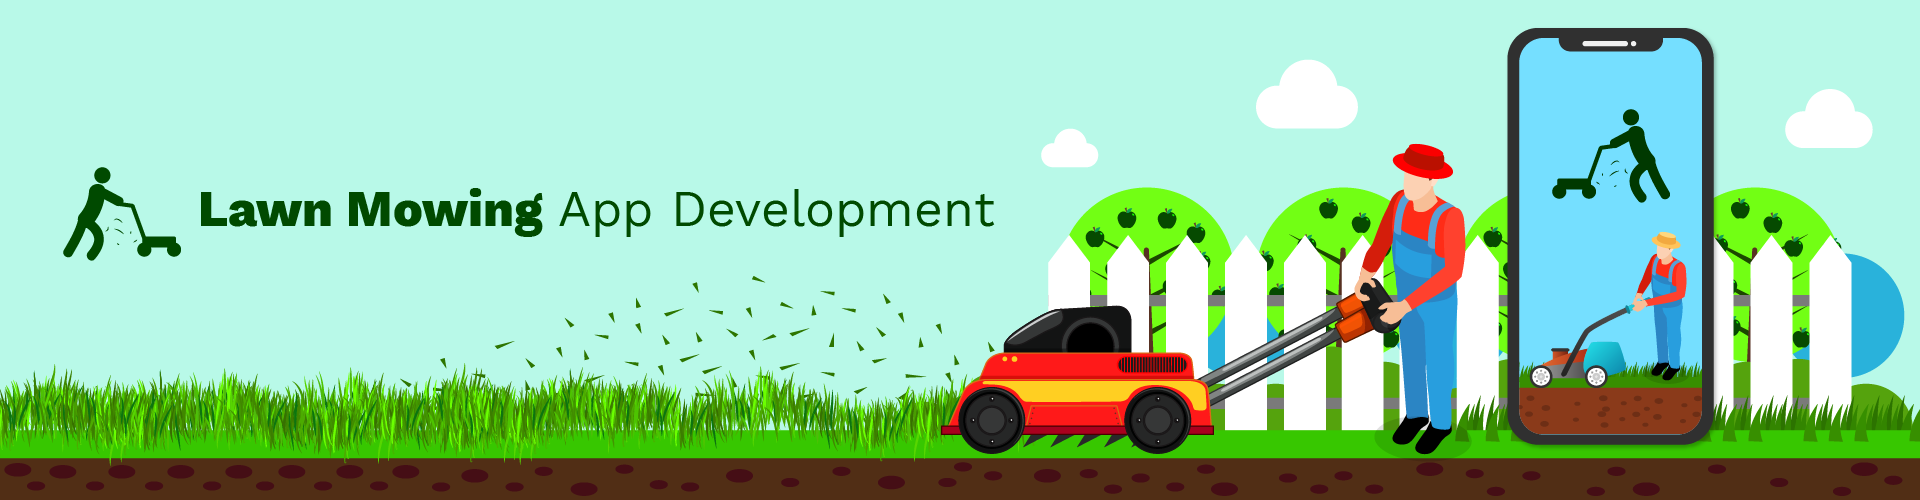 lawn mowing app development